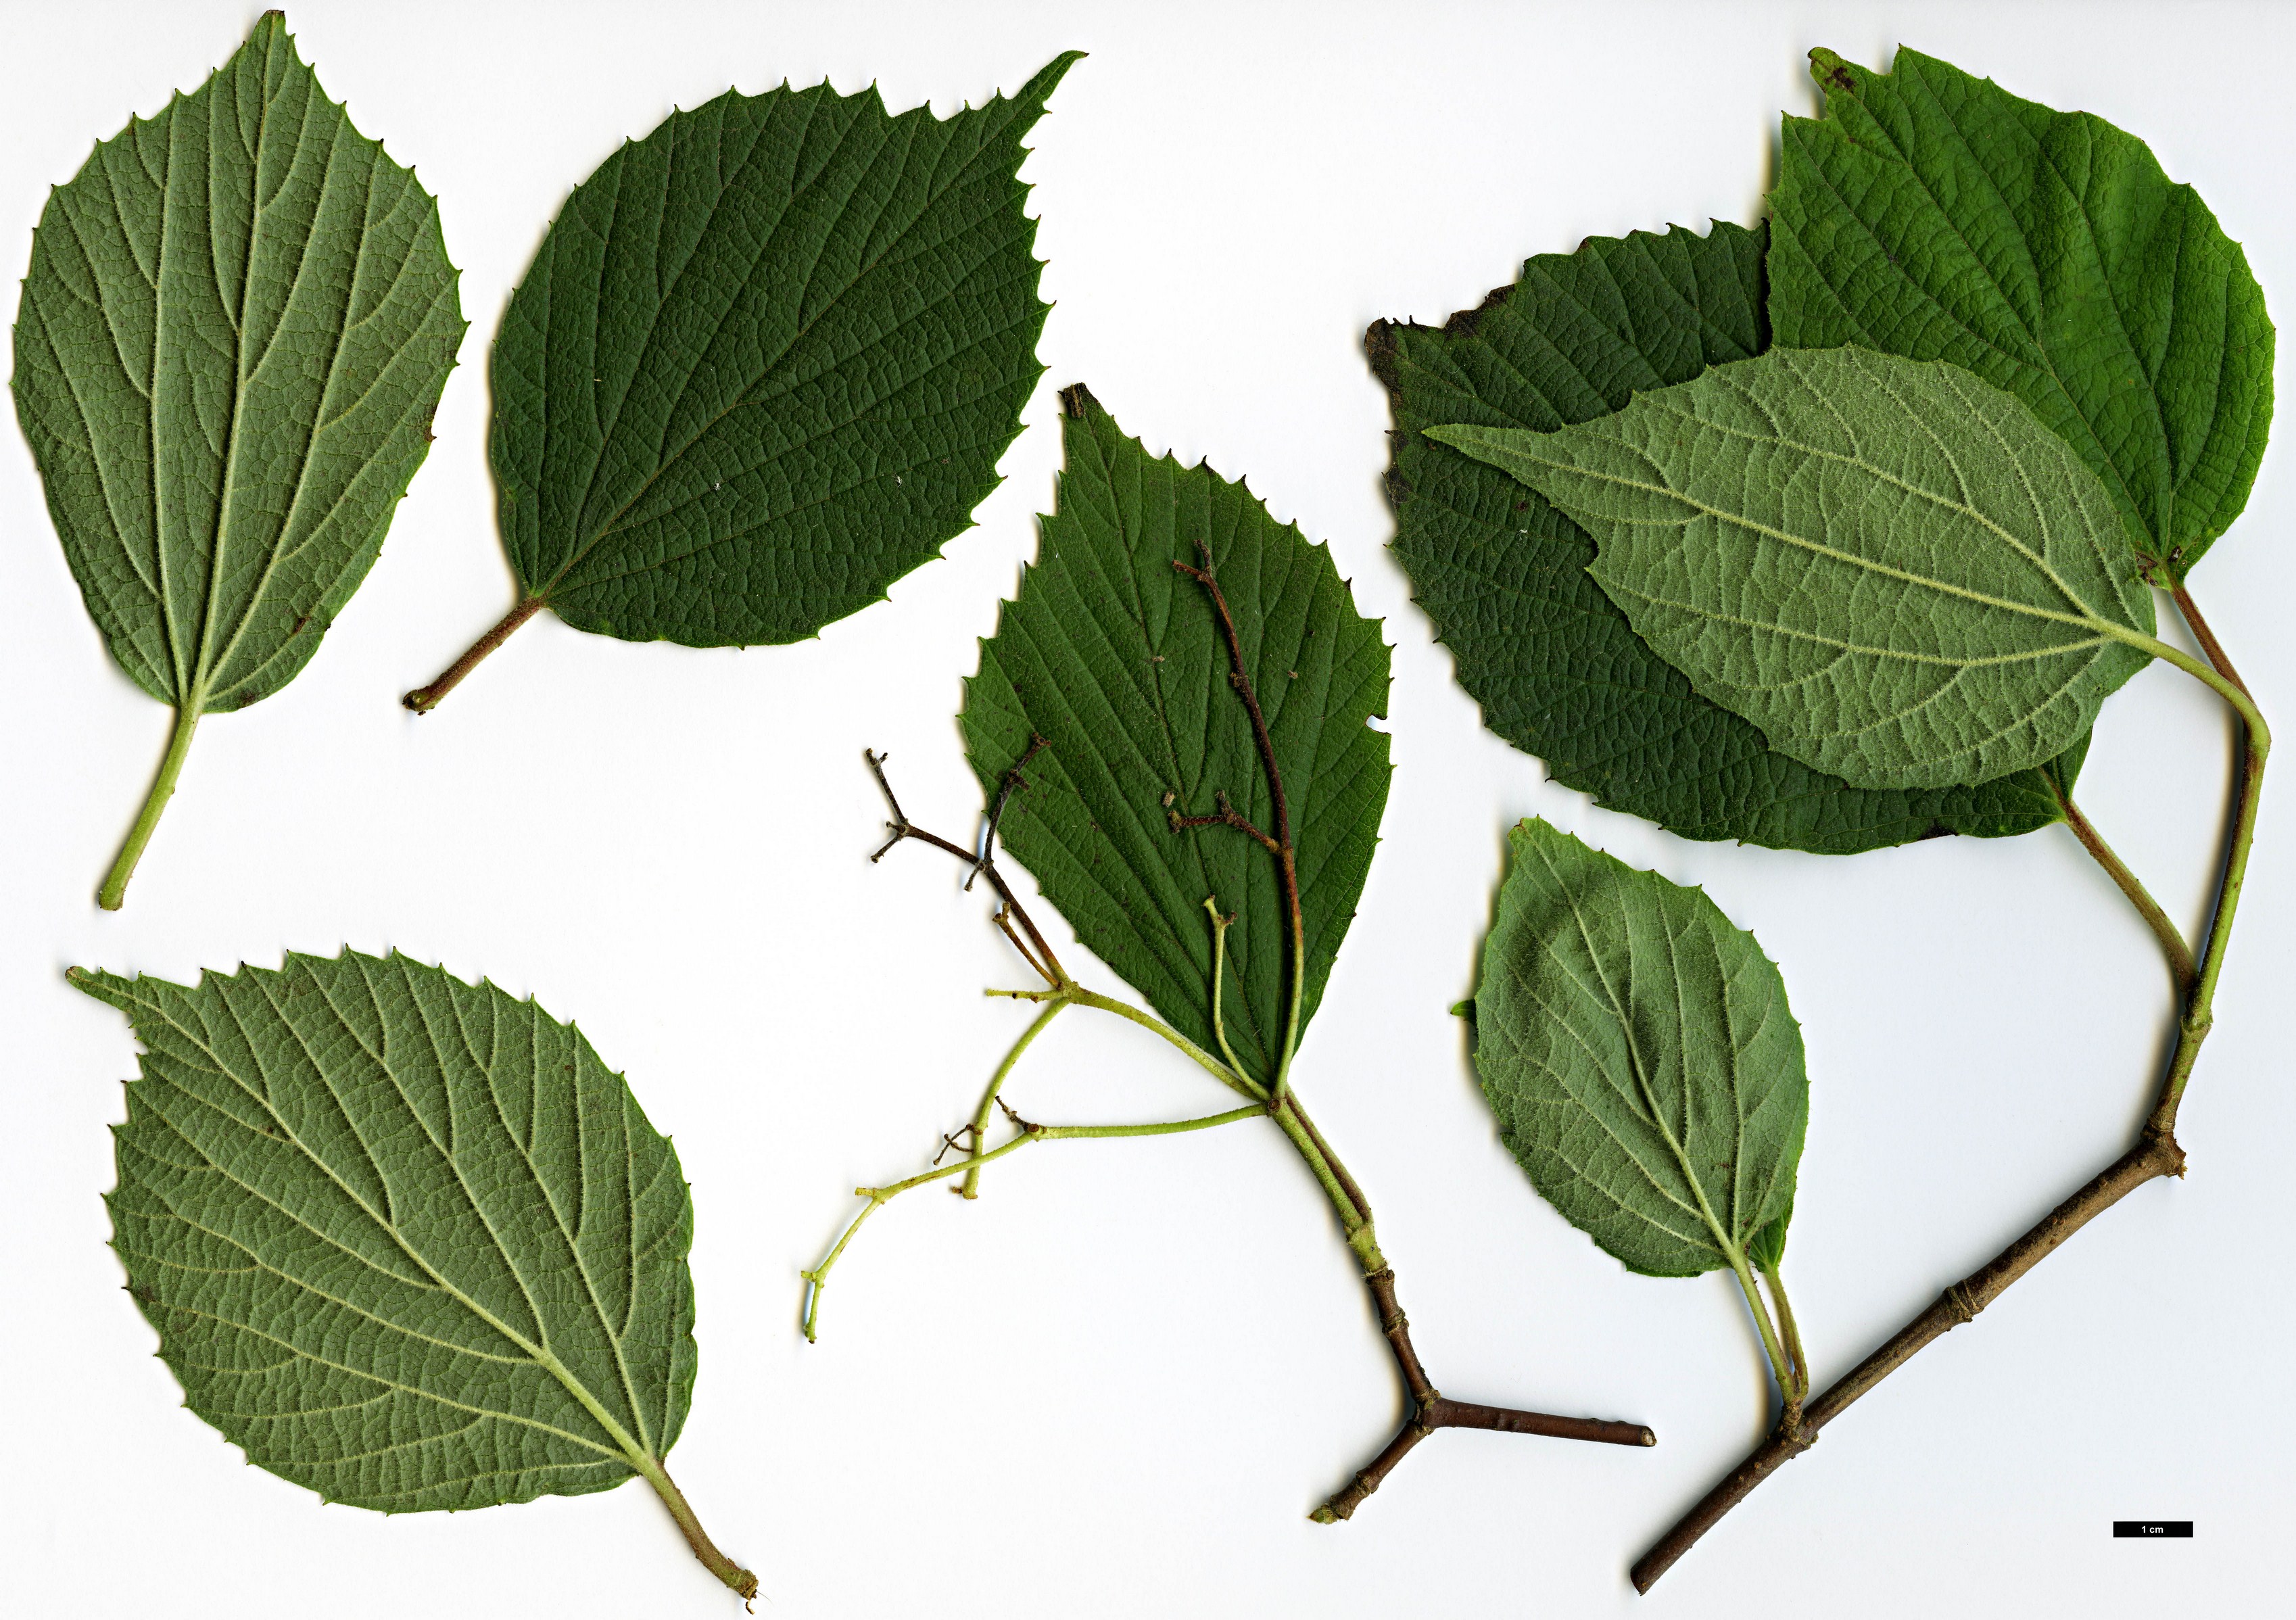 High resolution image: Family: Adoxaceae - Genus: Viburnum - Taxon: fordiae